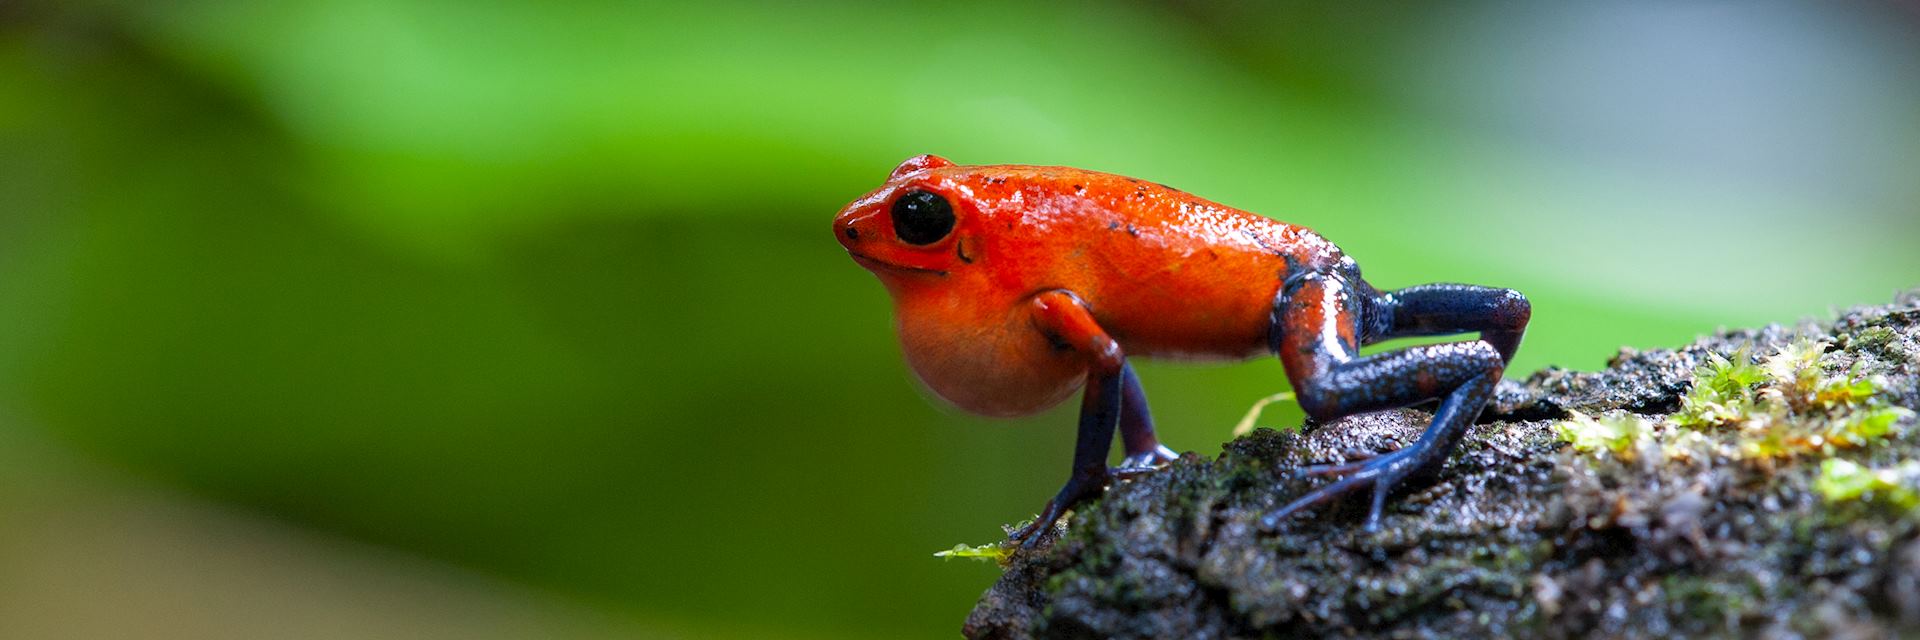 Strawberry poison-dart frog, La Selva Biological Station